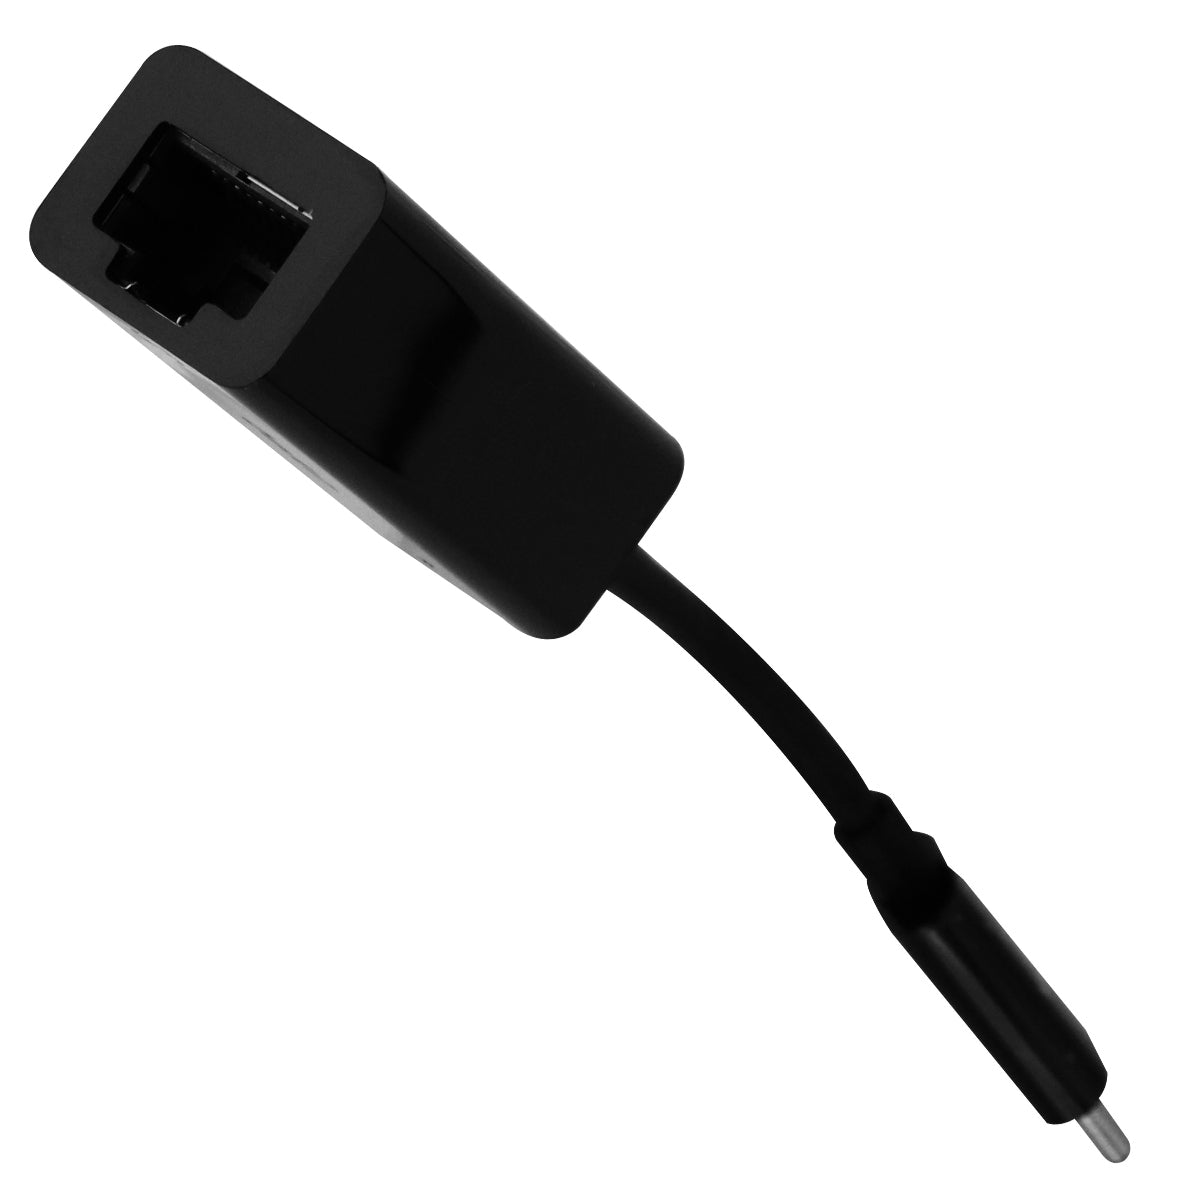 Belkin USB-C to Gigabit Ethernet Adapter - Black (F2CU040btBLK)